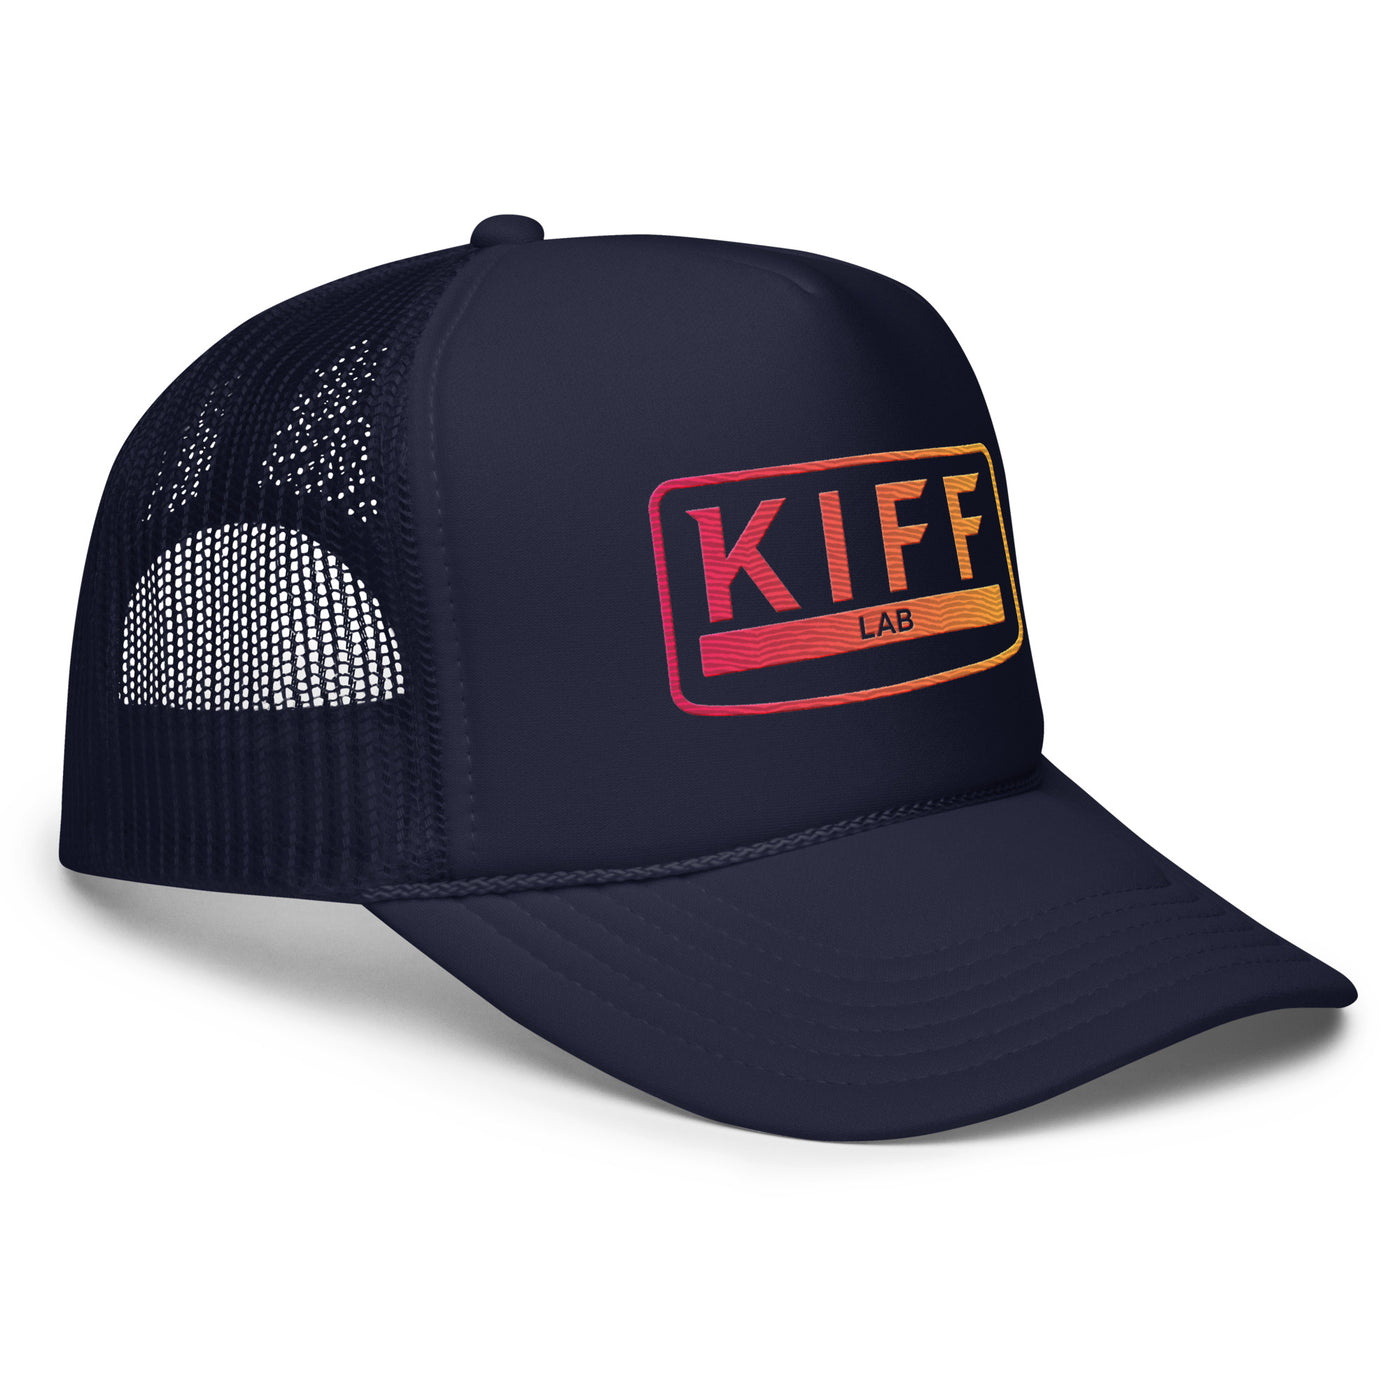 KiffLab Foam trucker cap